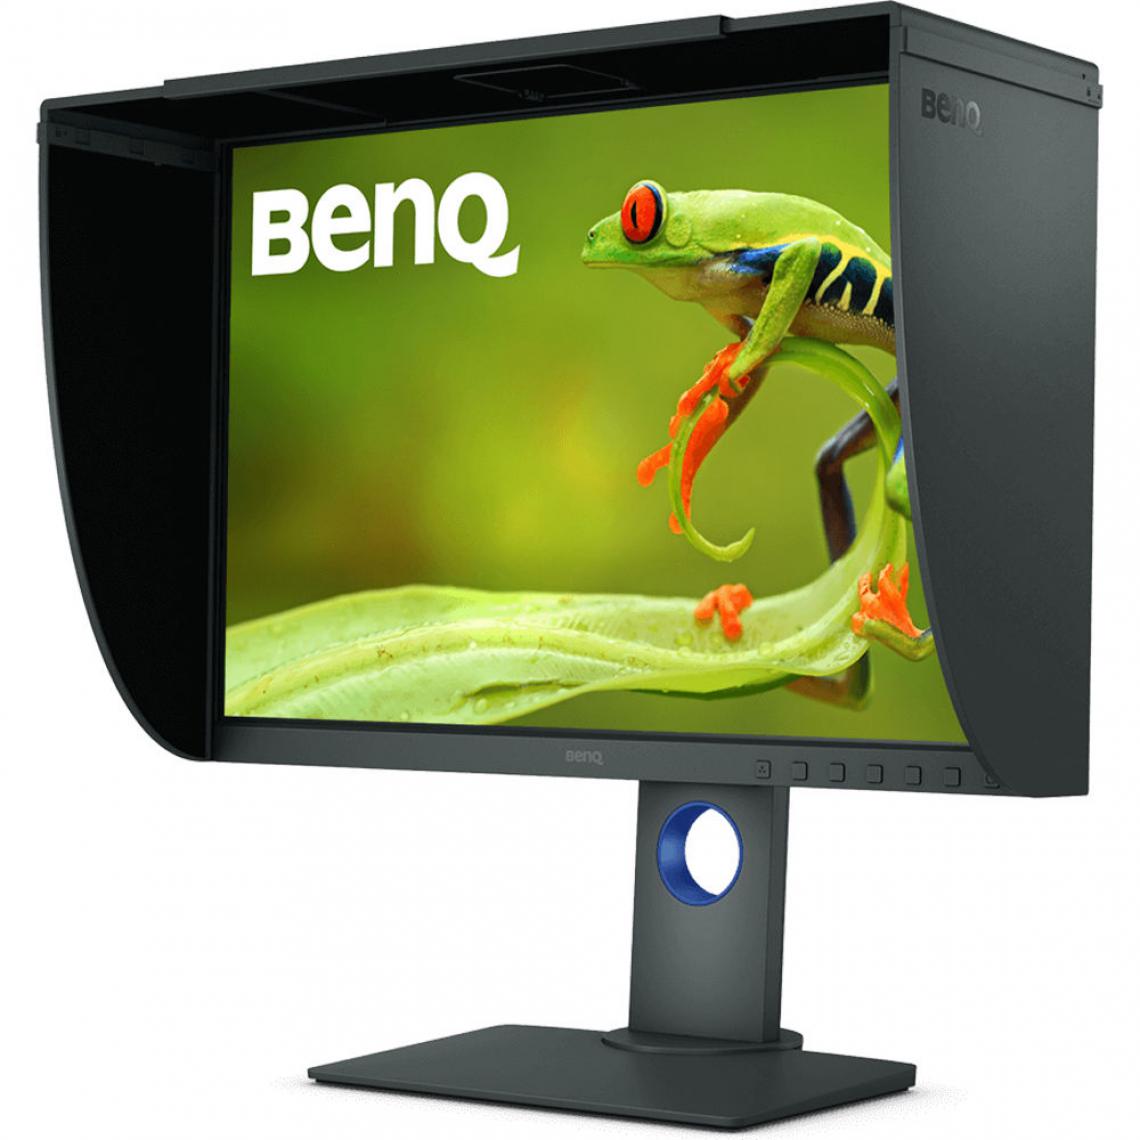 Benq - BenQ SH240 - Moniteur PC